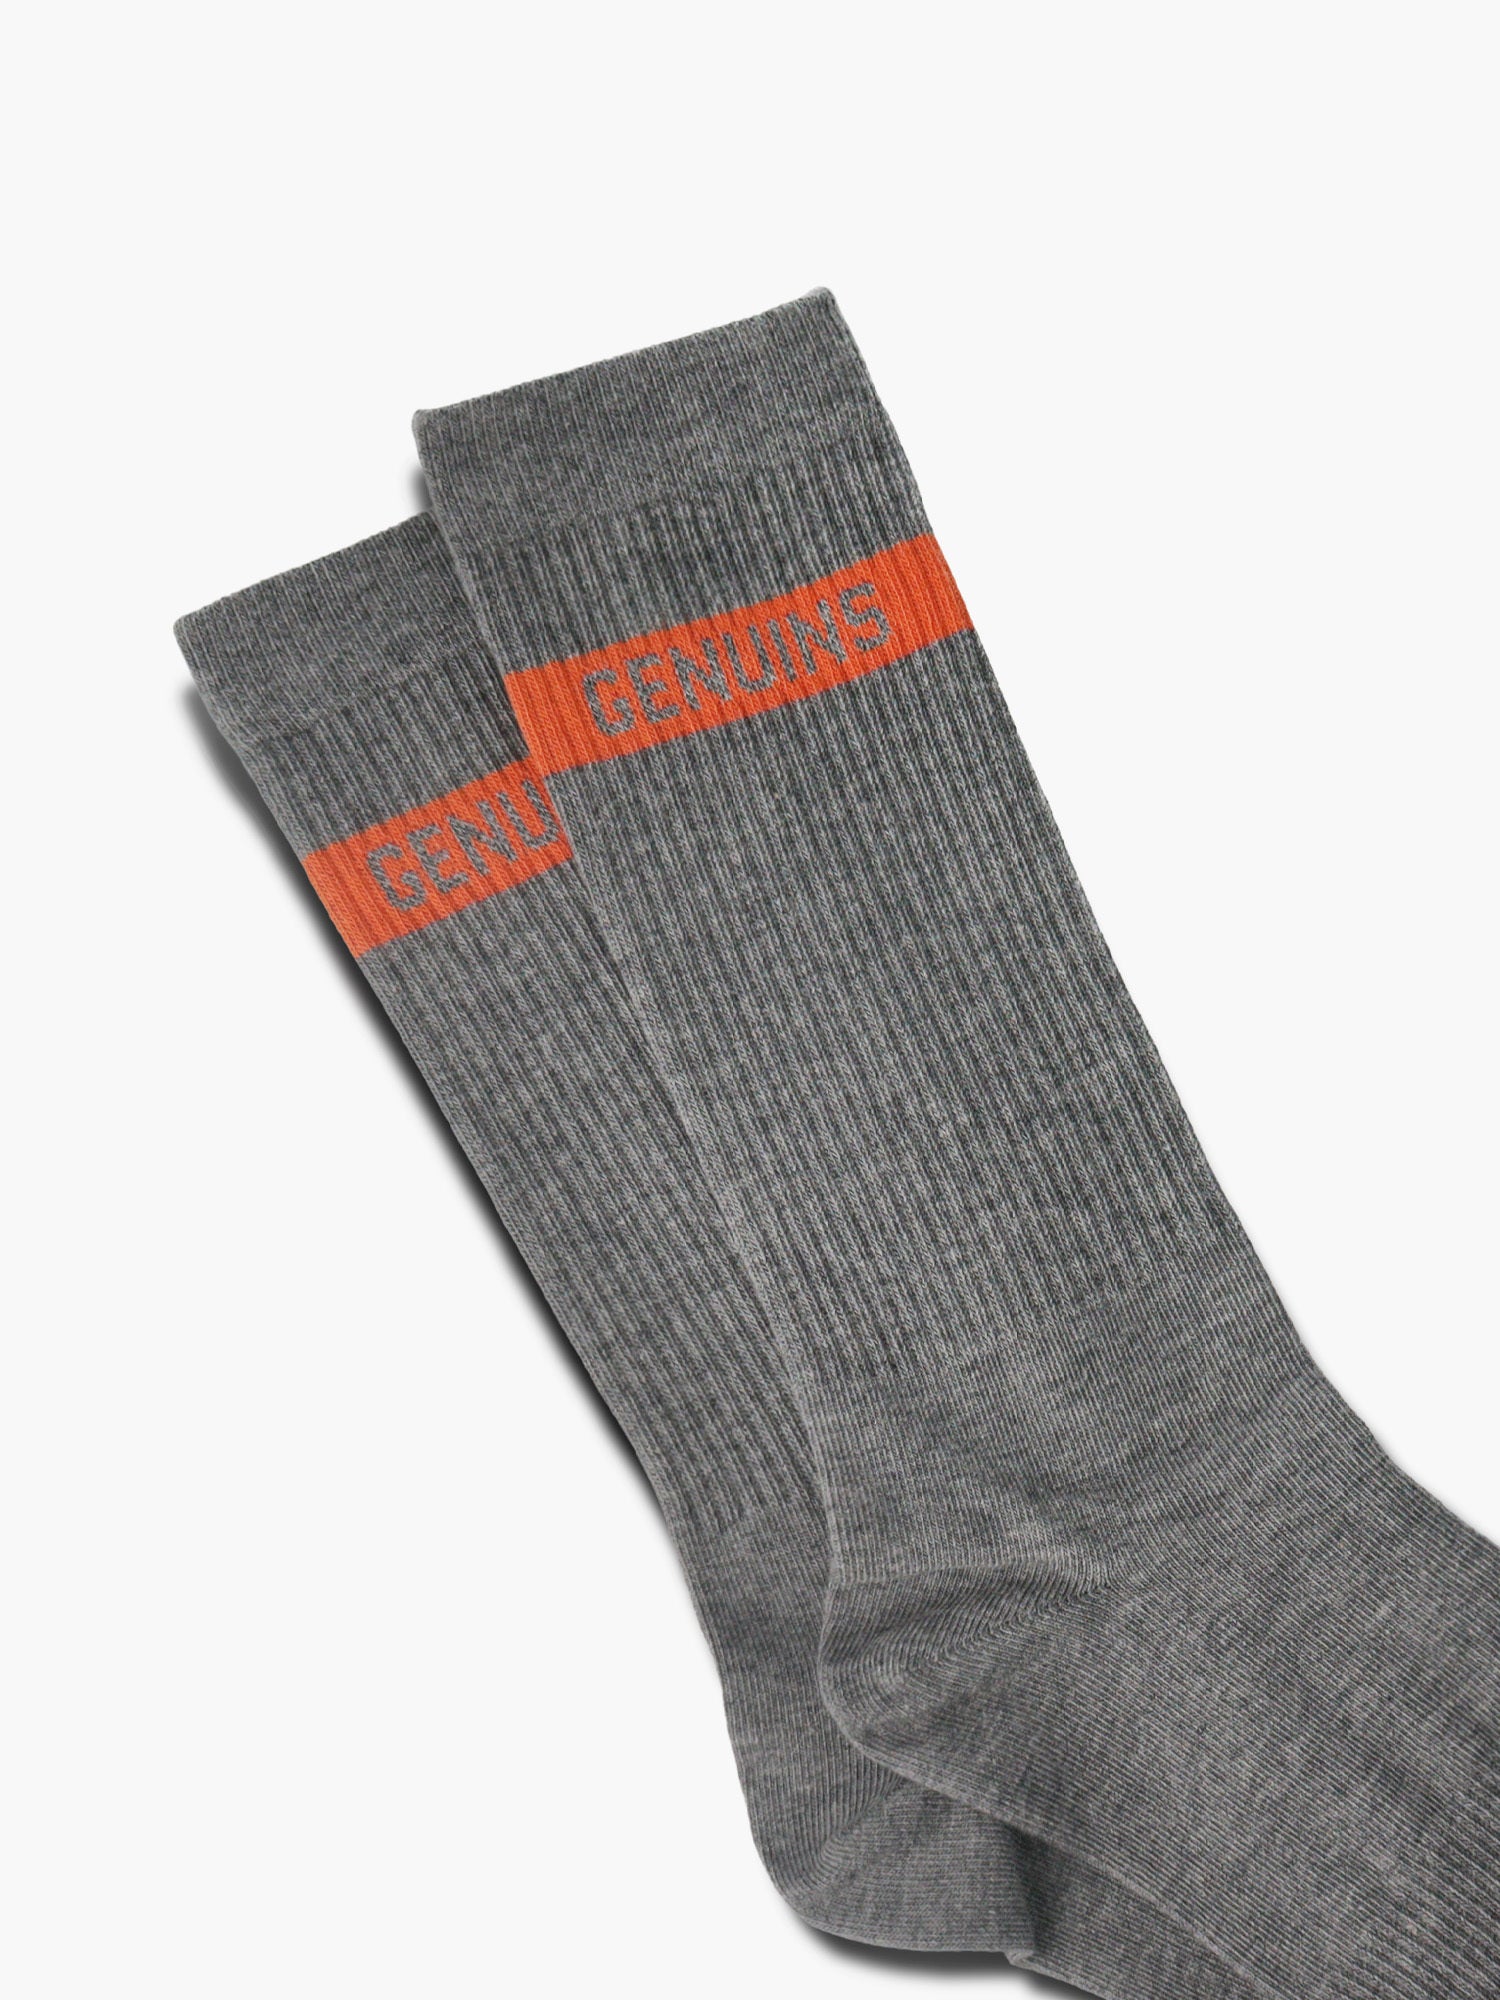 Genuins Socks Orange Unisex